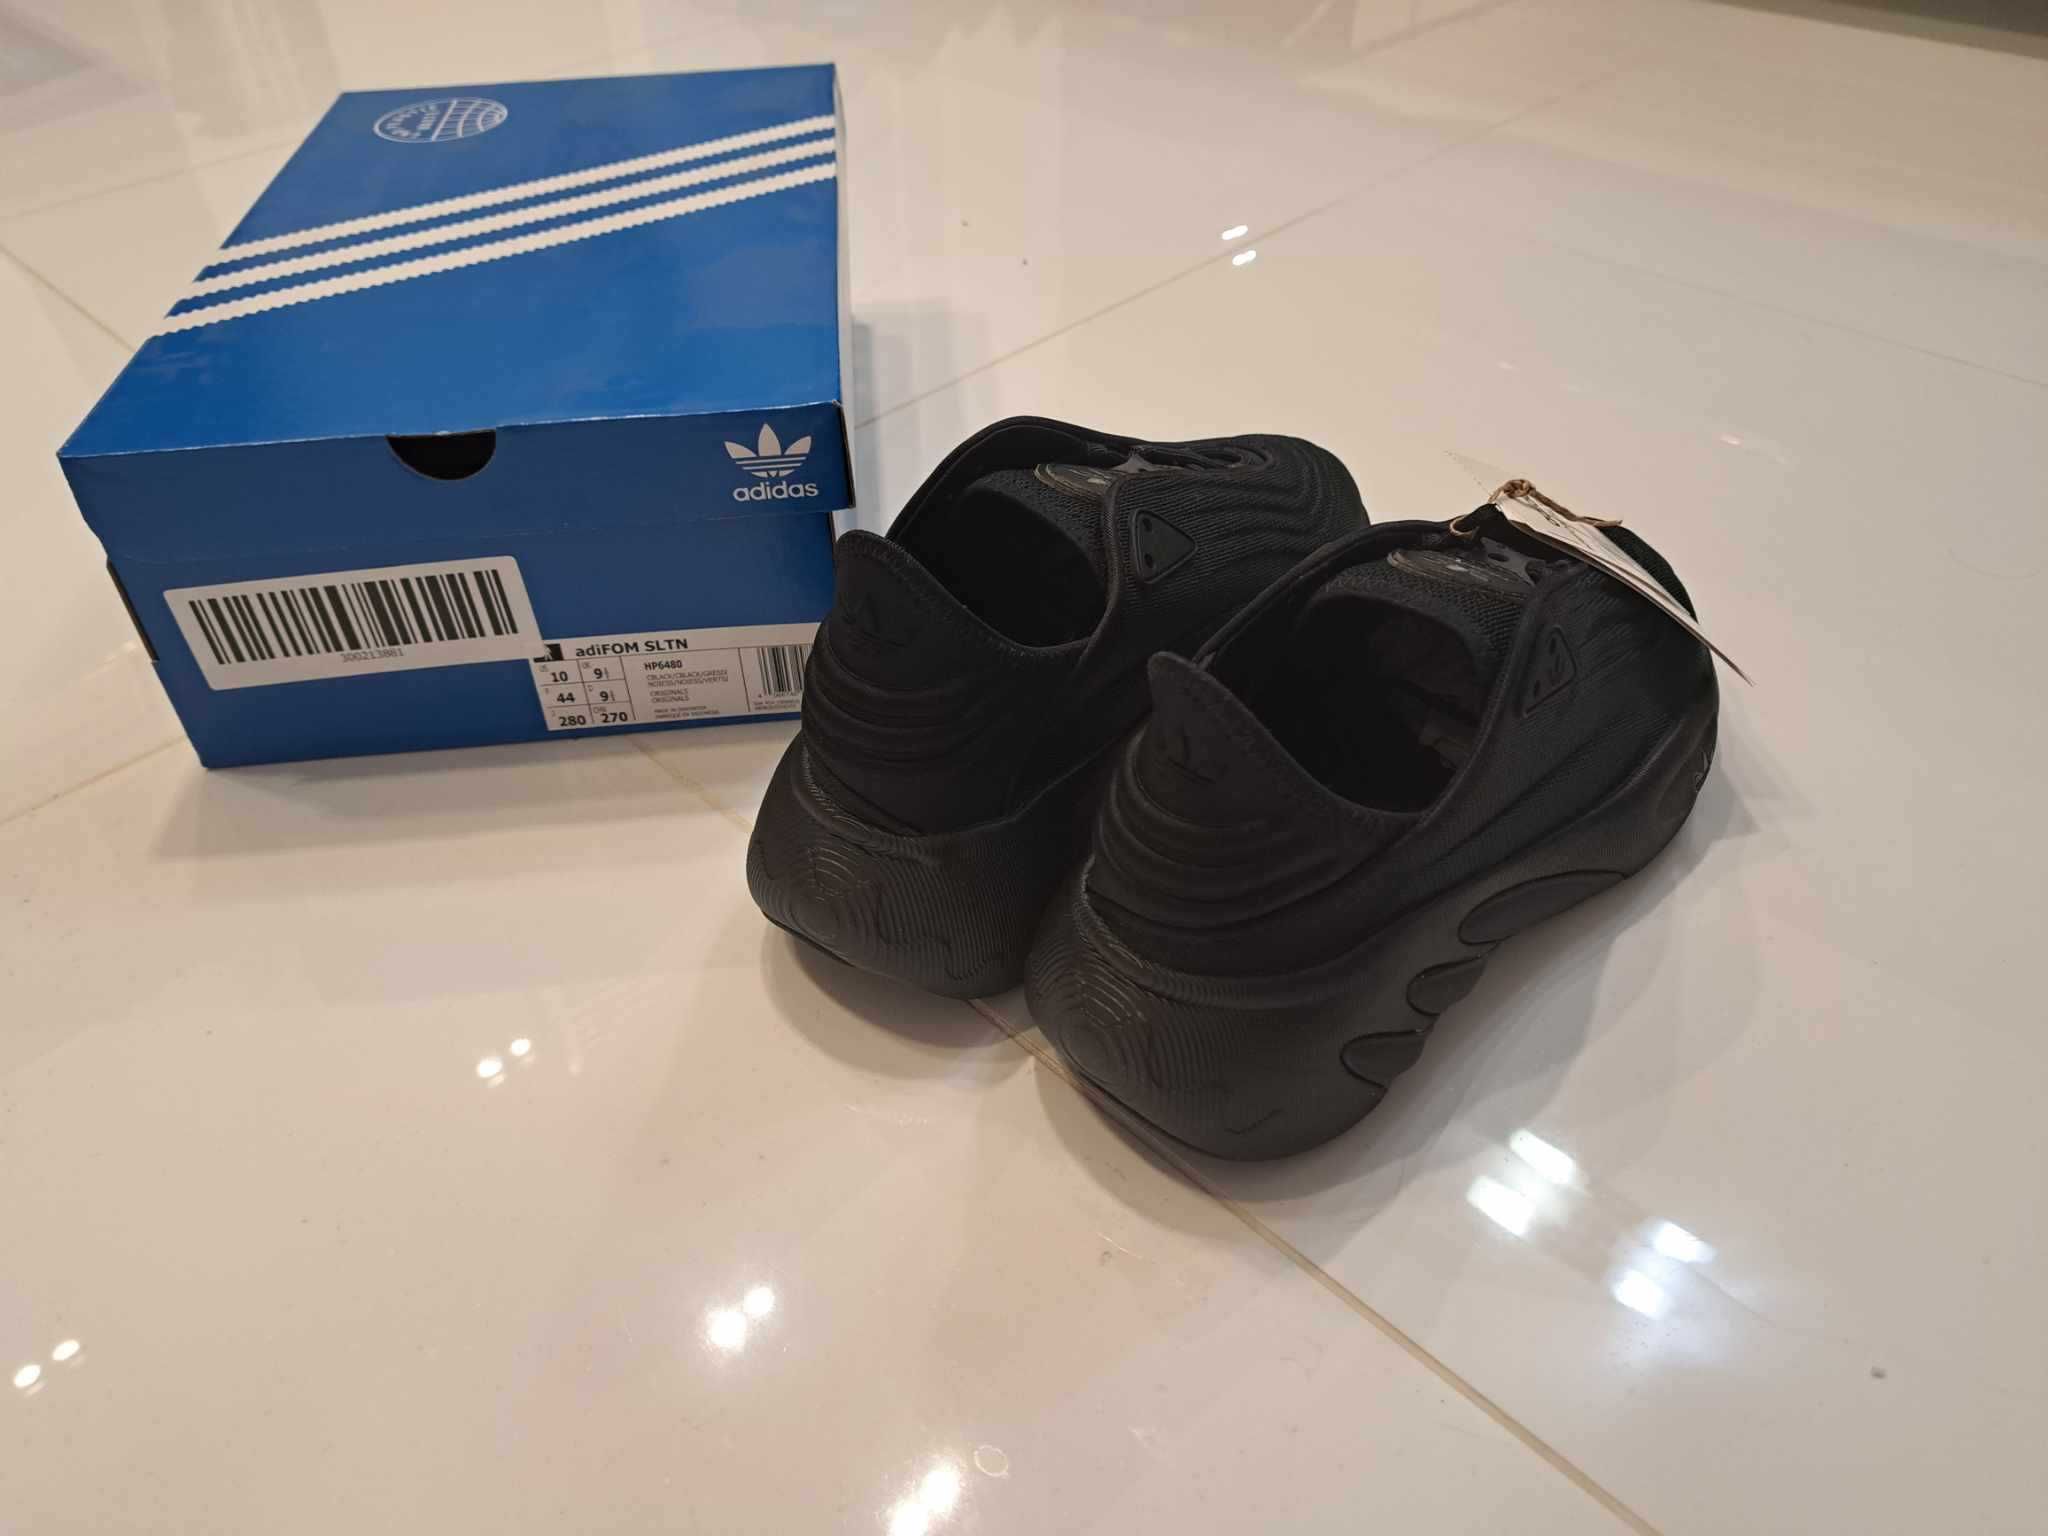 Sportowe buty męskie Adidas  Adifom SLTN Shoes, rozmiar 44